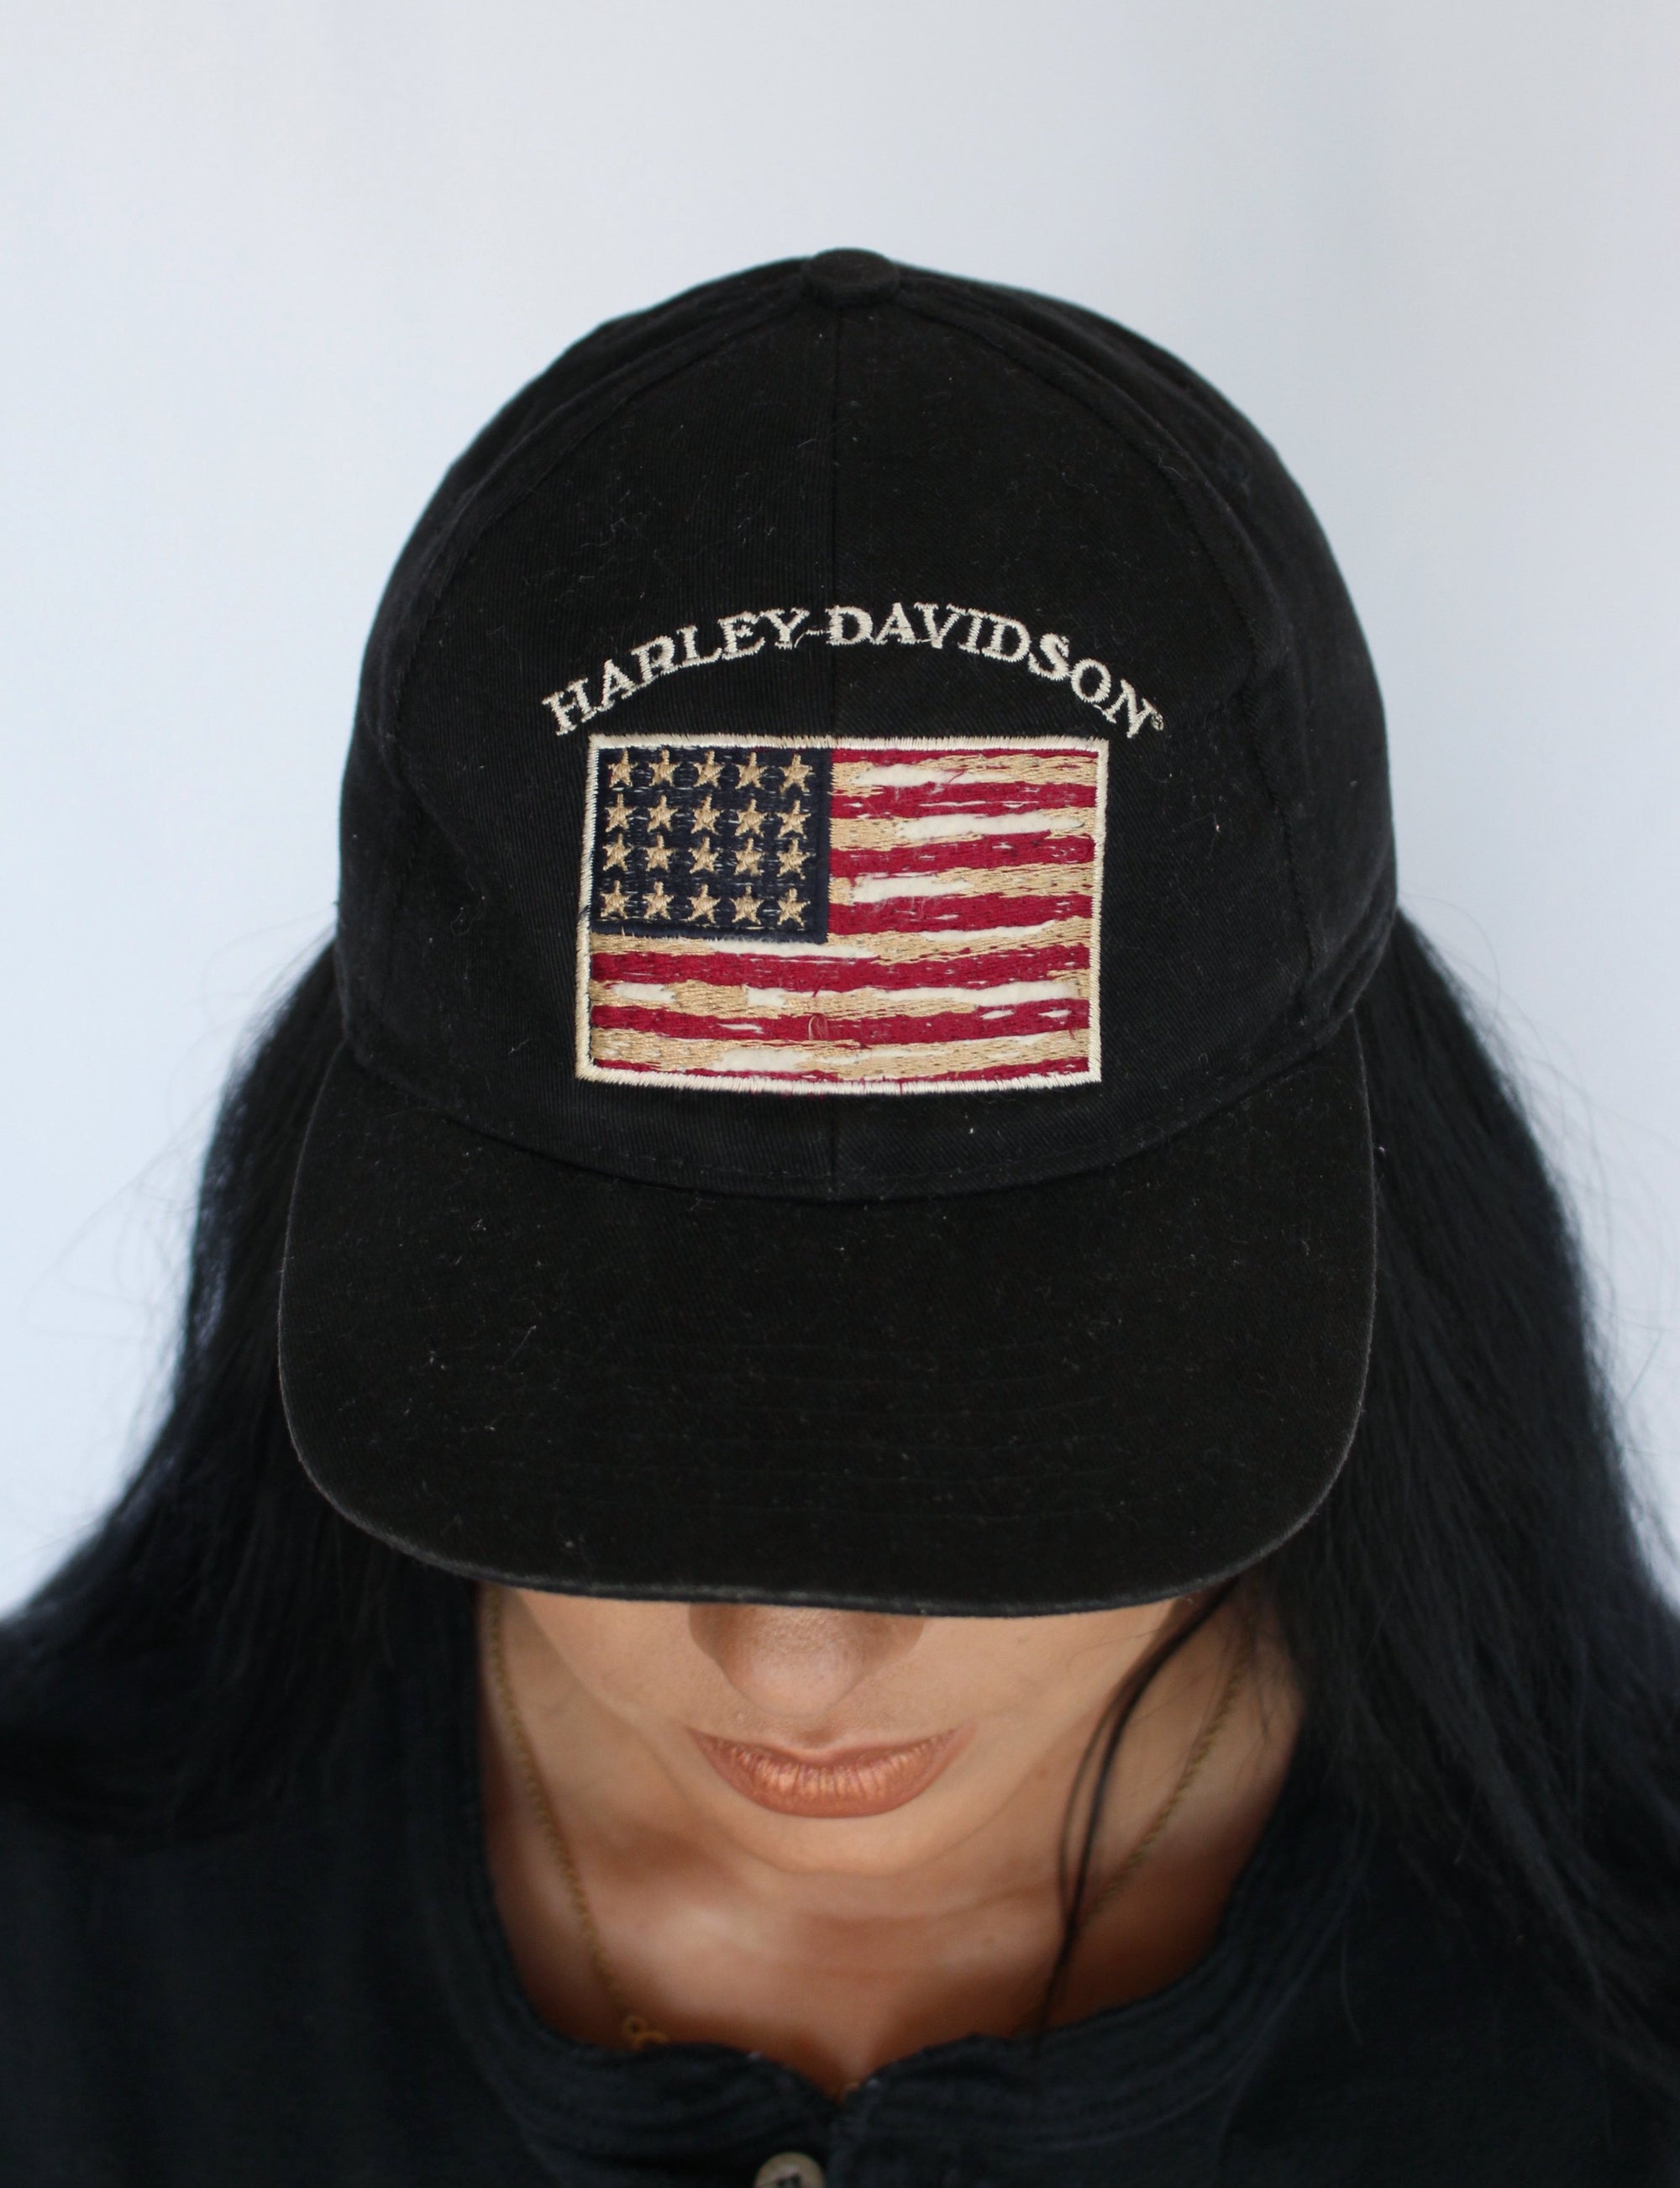 Harley Davidson cap